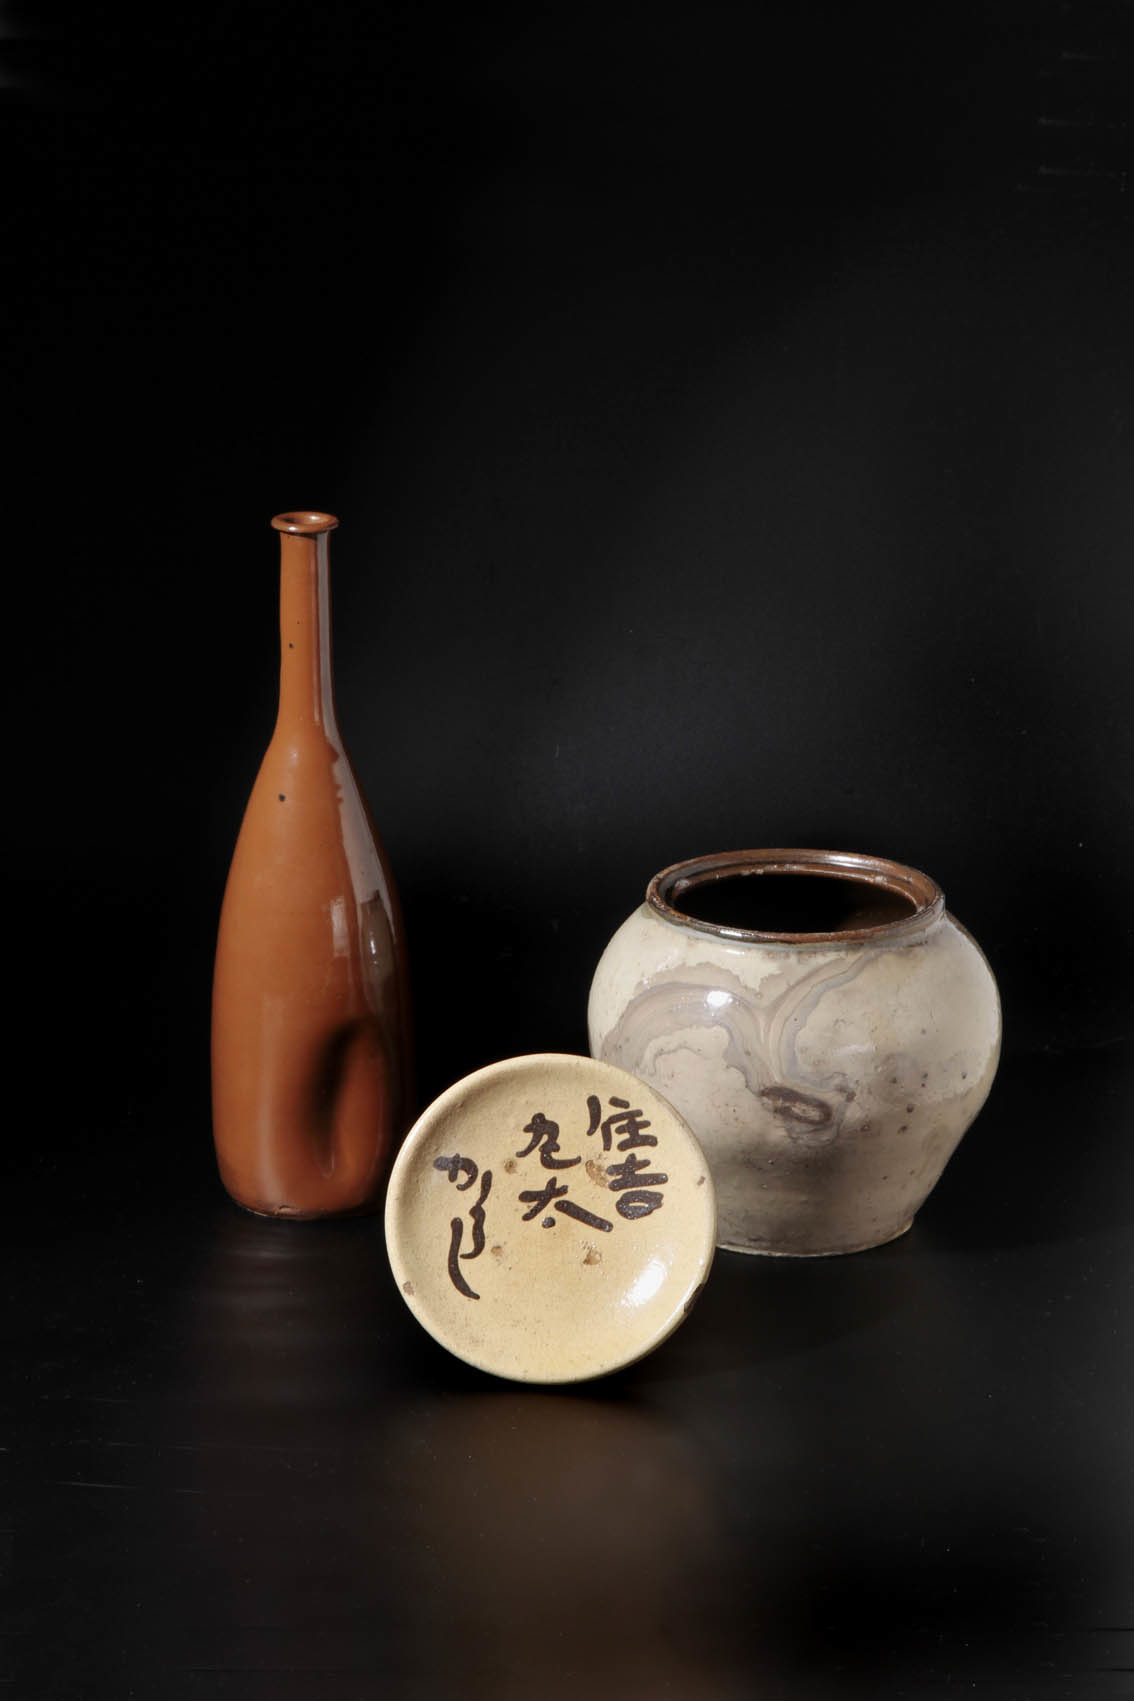 古丹波三題。徳利と小壺と小皿と。 : 京都の骨董&ギャラリー「幾一里の 